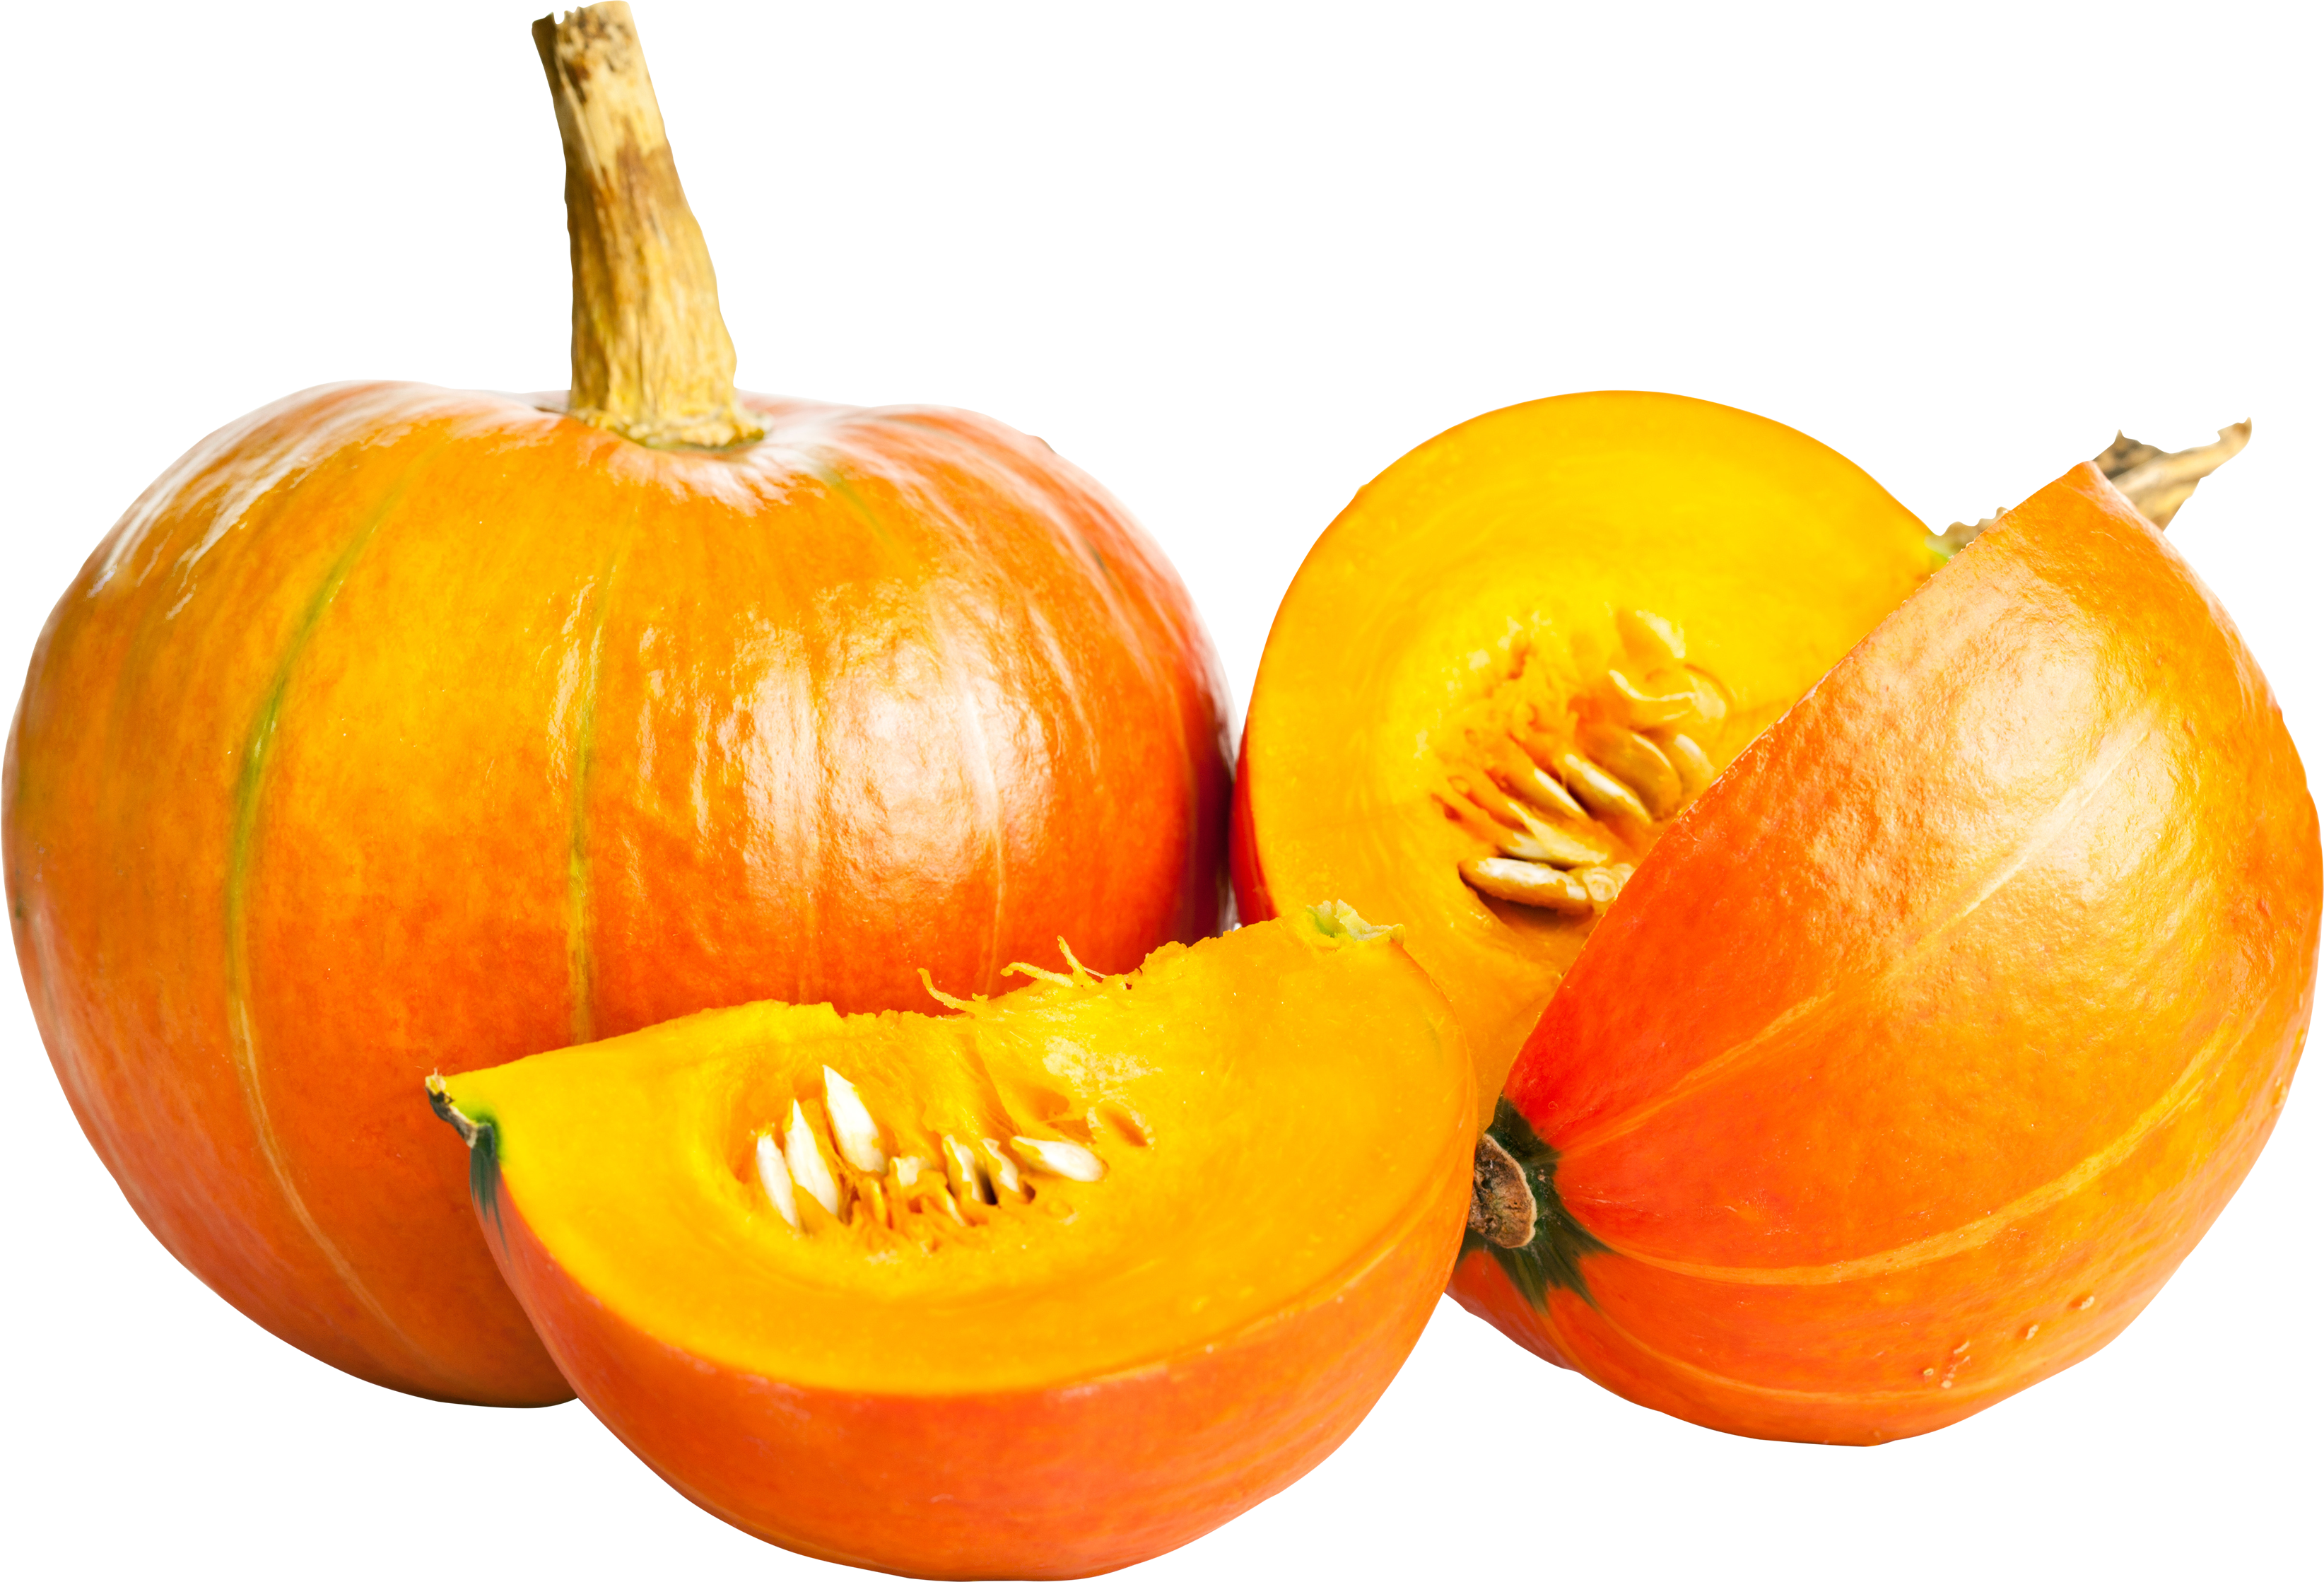 Halloween Pumpkin PNG HD